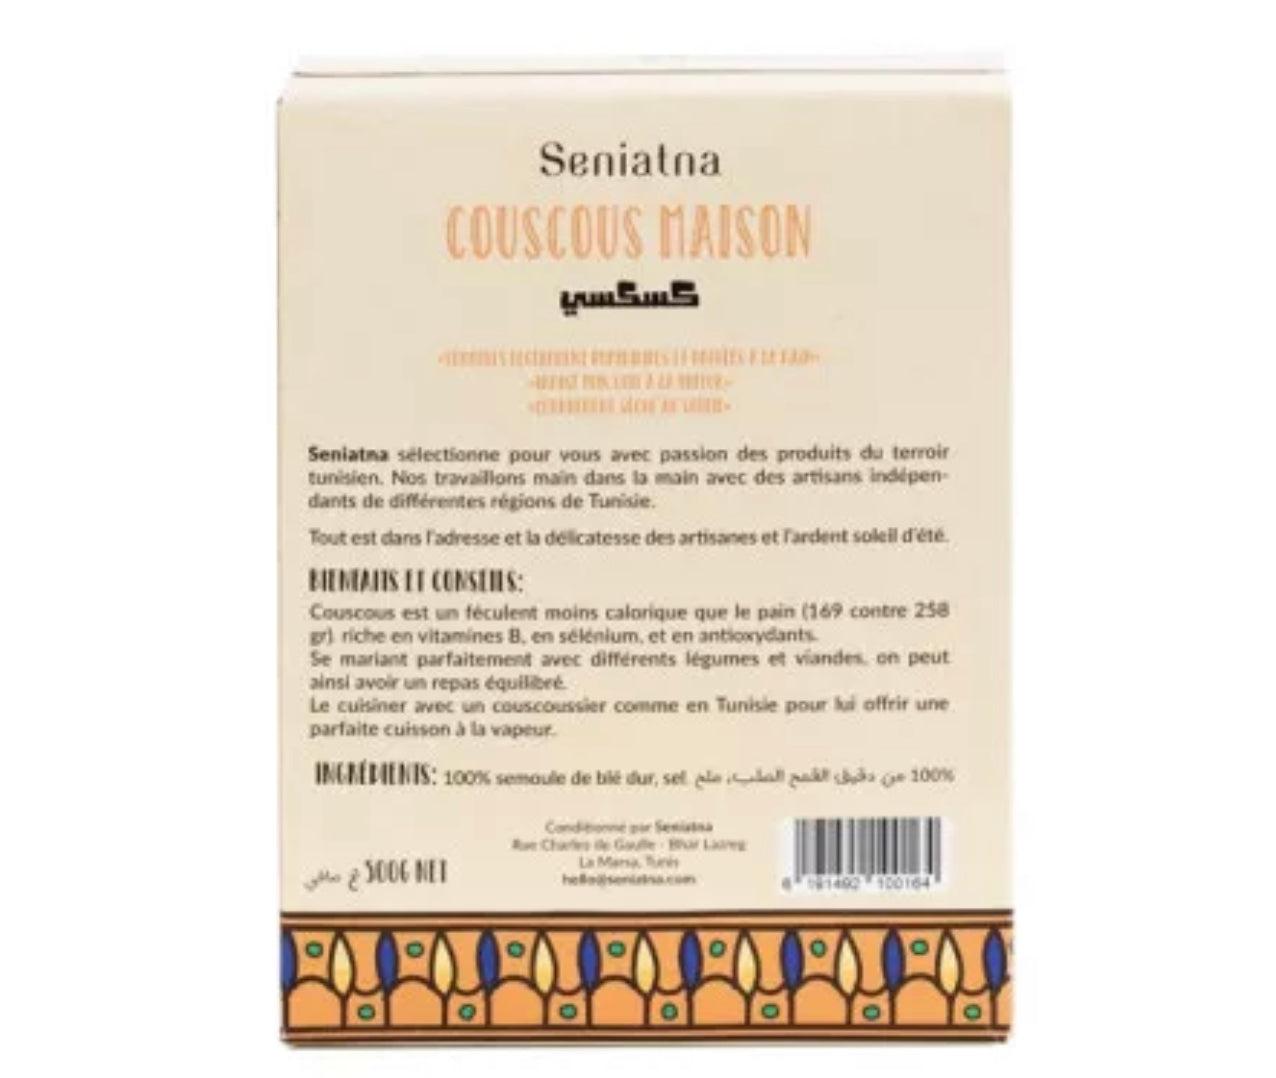 Homemade couscous - 500g